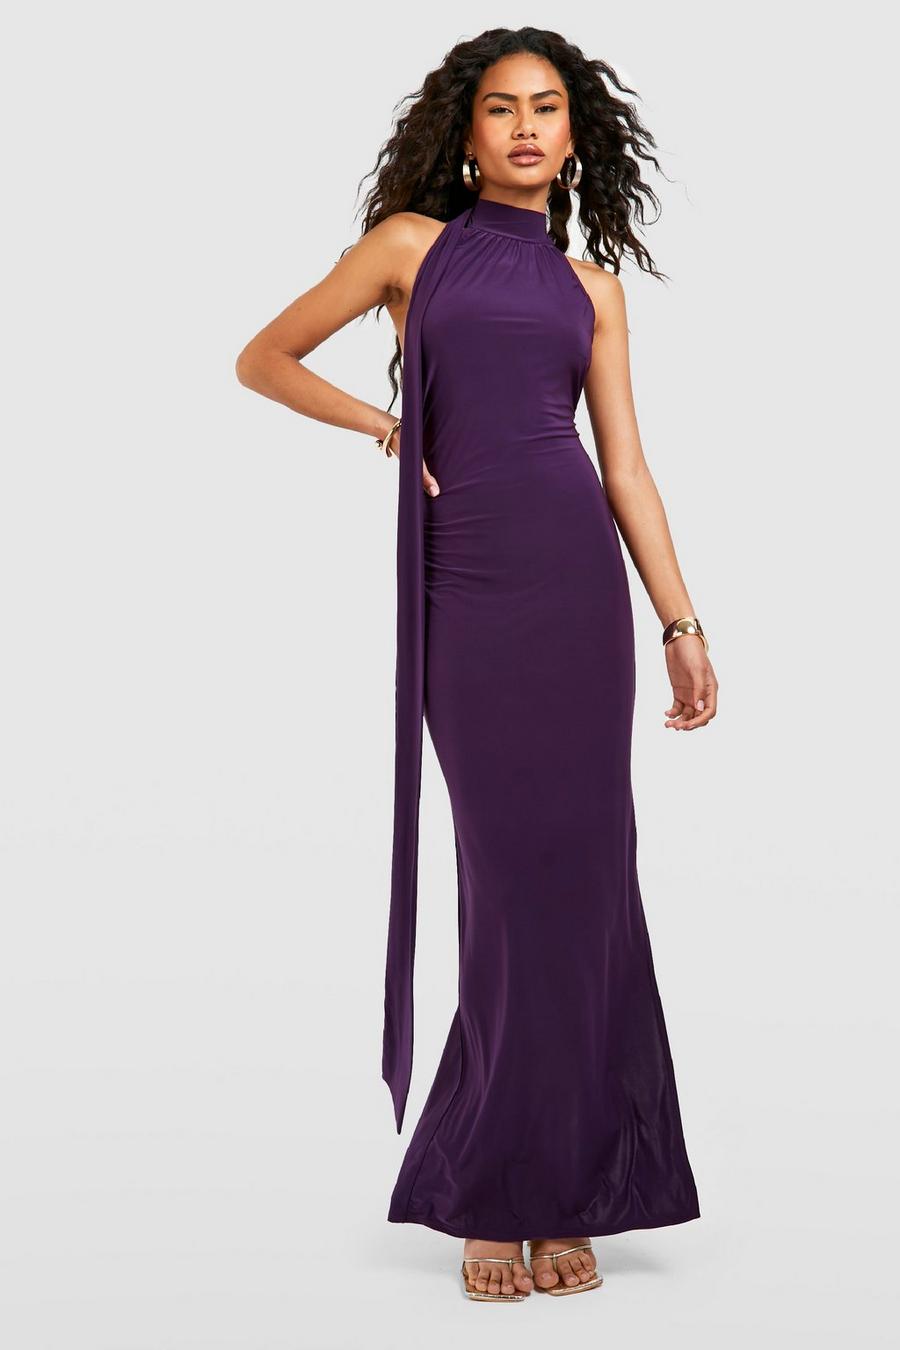 https://media.boohoo.com/i/boohoo/gzz55915_purple_xl/female-purple-slinky-halter-drape-detail-midi-dress/?w=900&qlt=default&fmt.jp2.qlt=70&fmt=auto&sm=fit